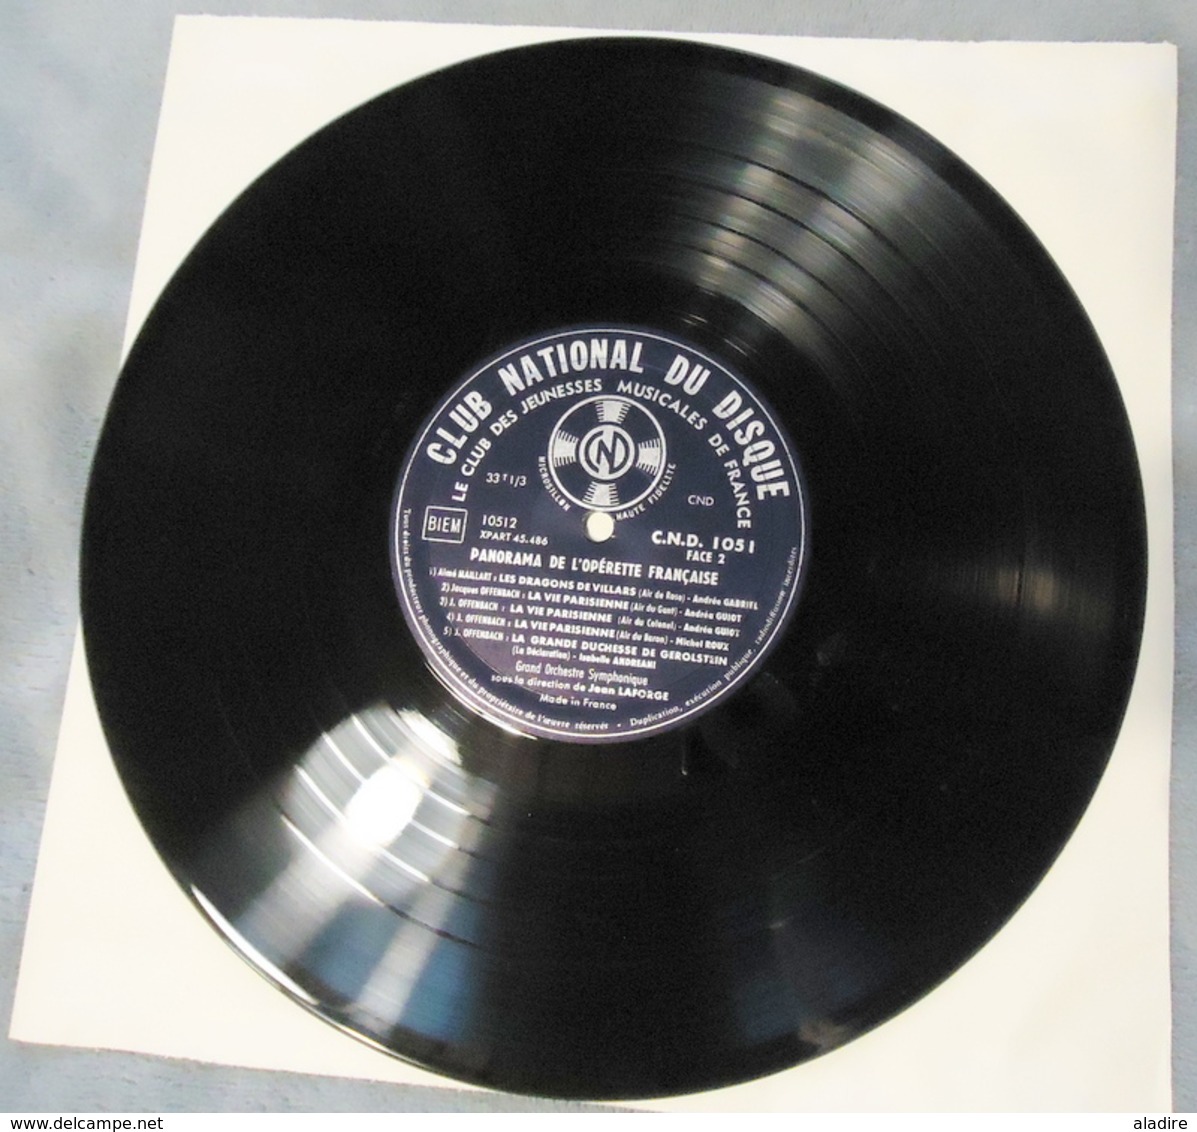 1960 - Panorama de l' OPERETTE française - 5 disques vinyle dans coffret velours et livret d'introduction 38 pages